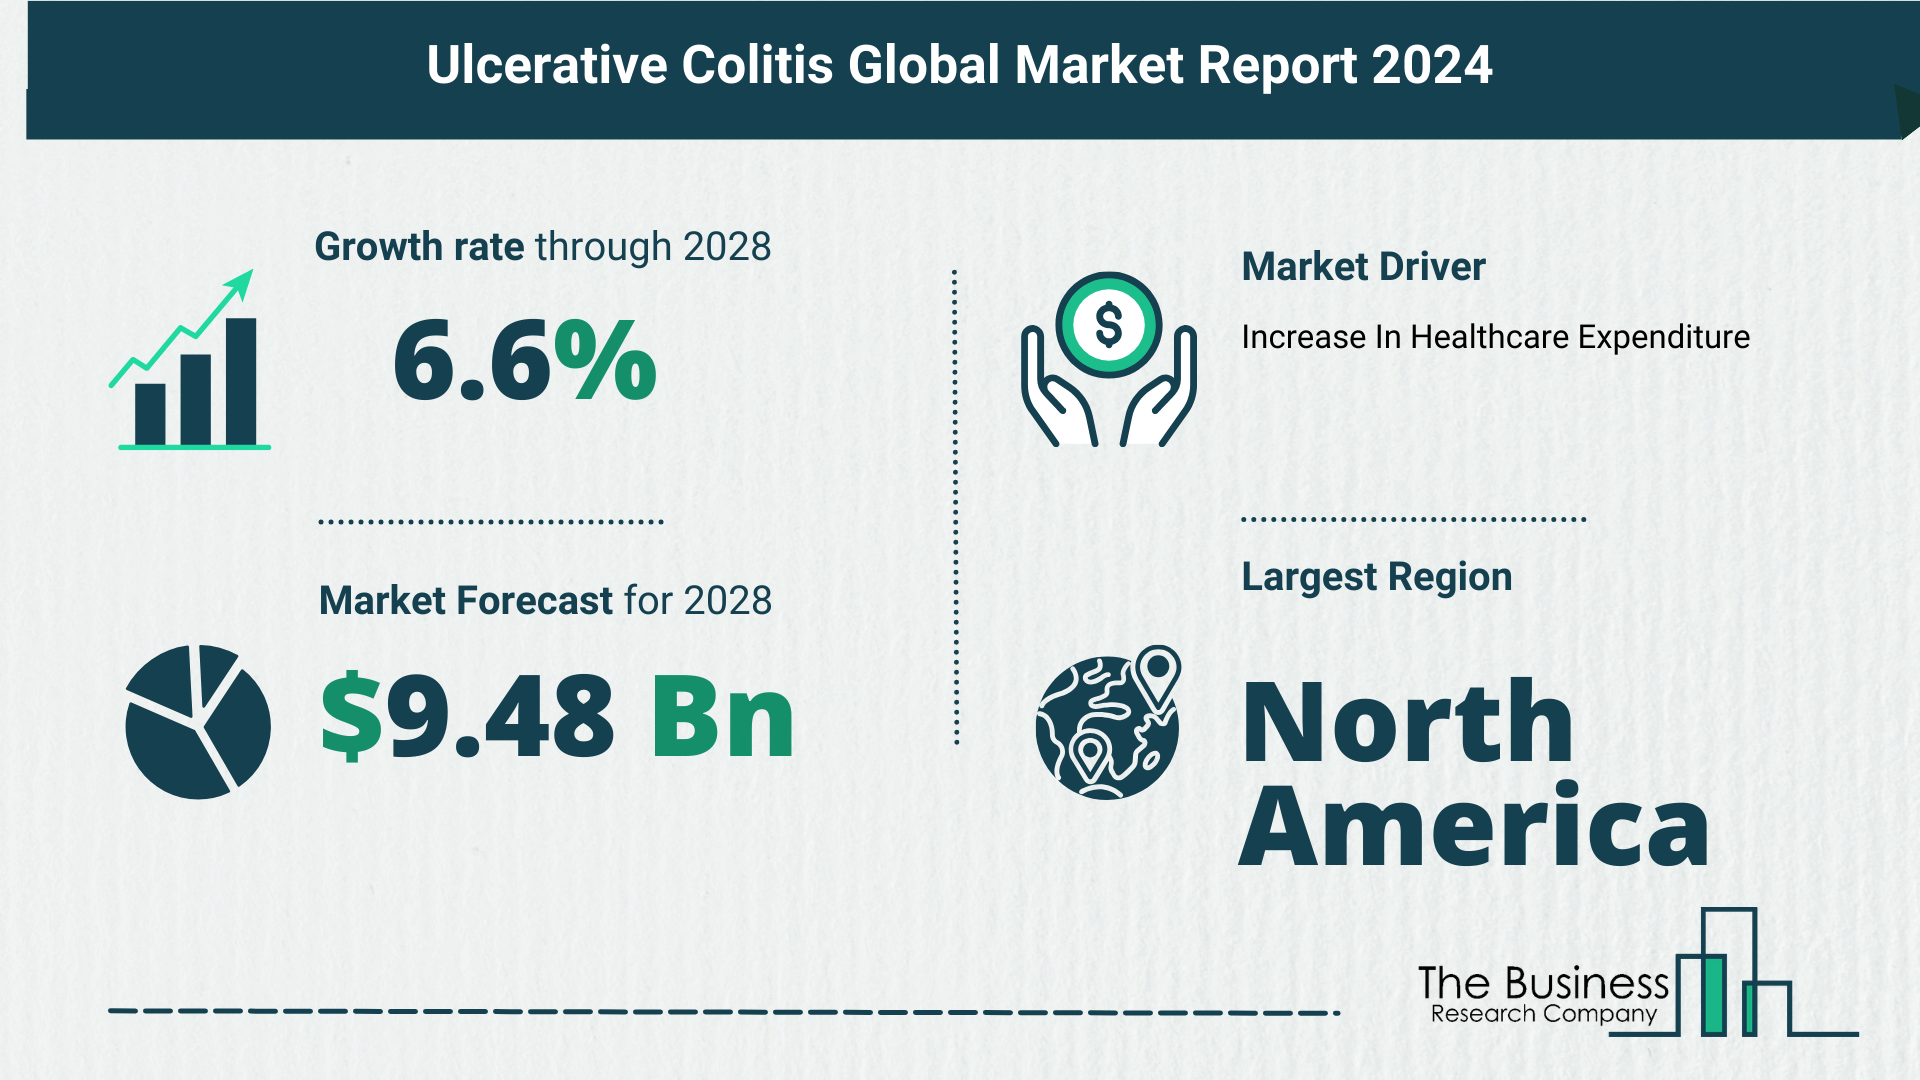 Global Ulcerative Colitis Market